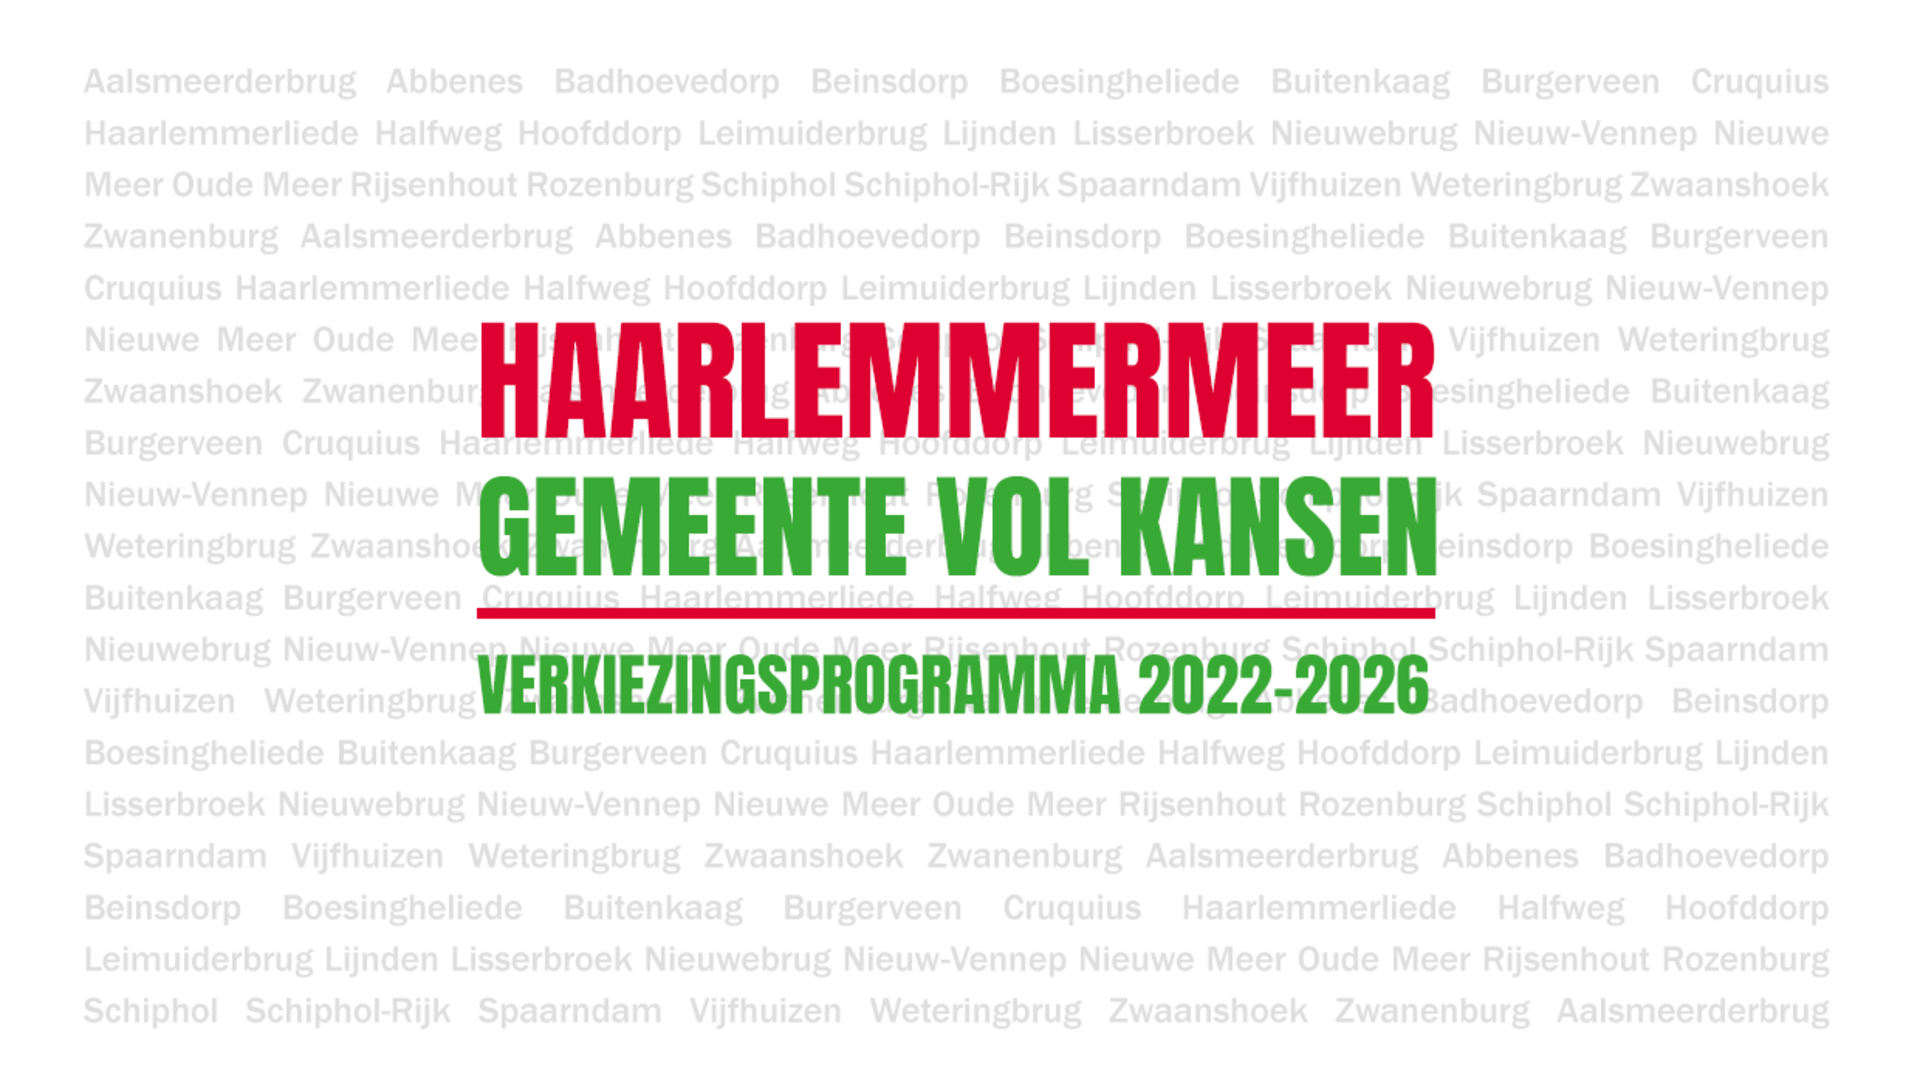 GroenLinks presenteert programma 2022-2026